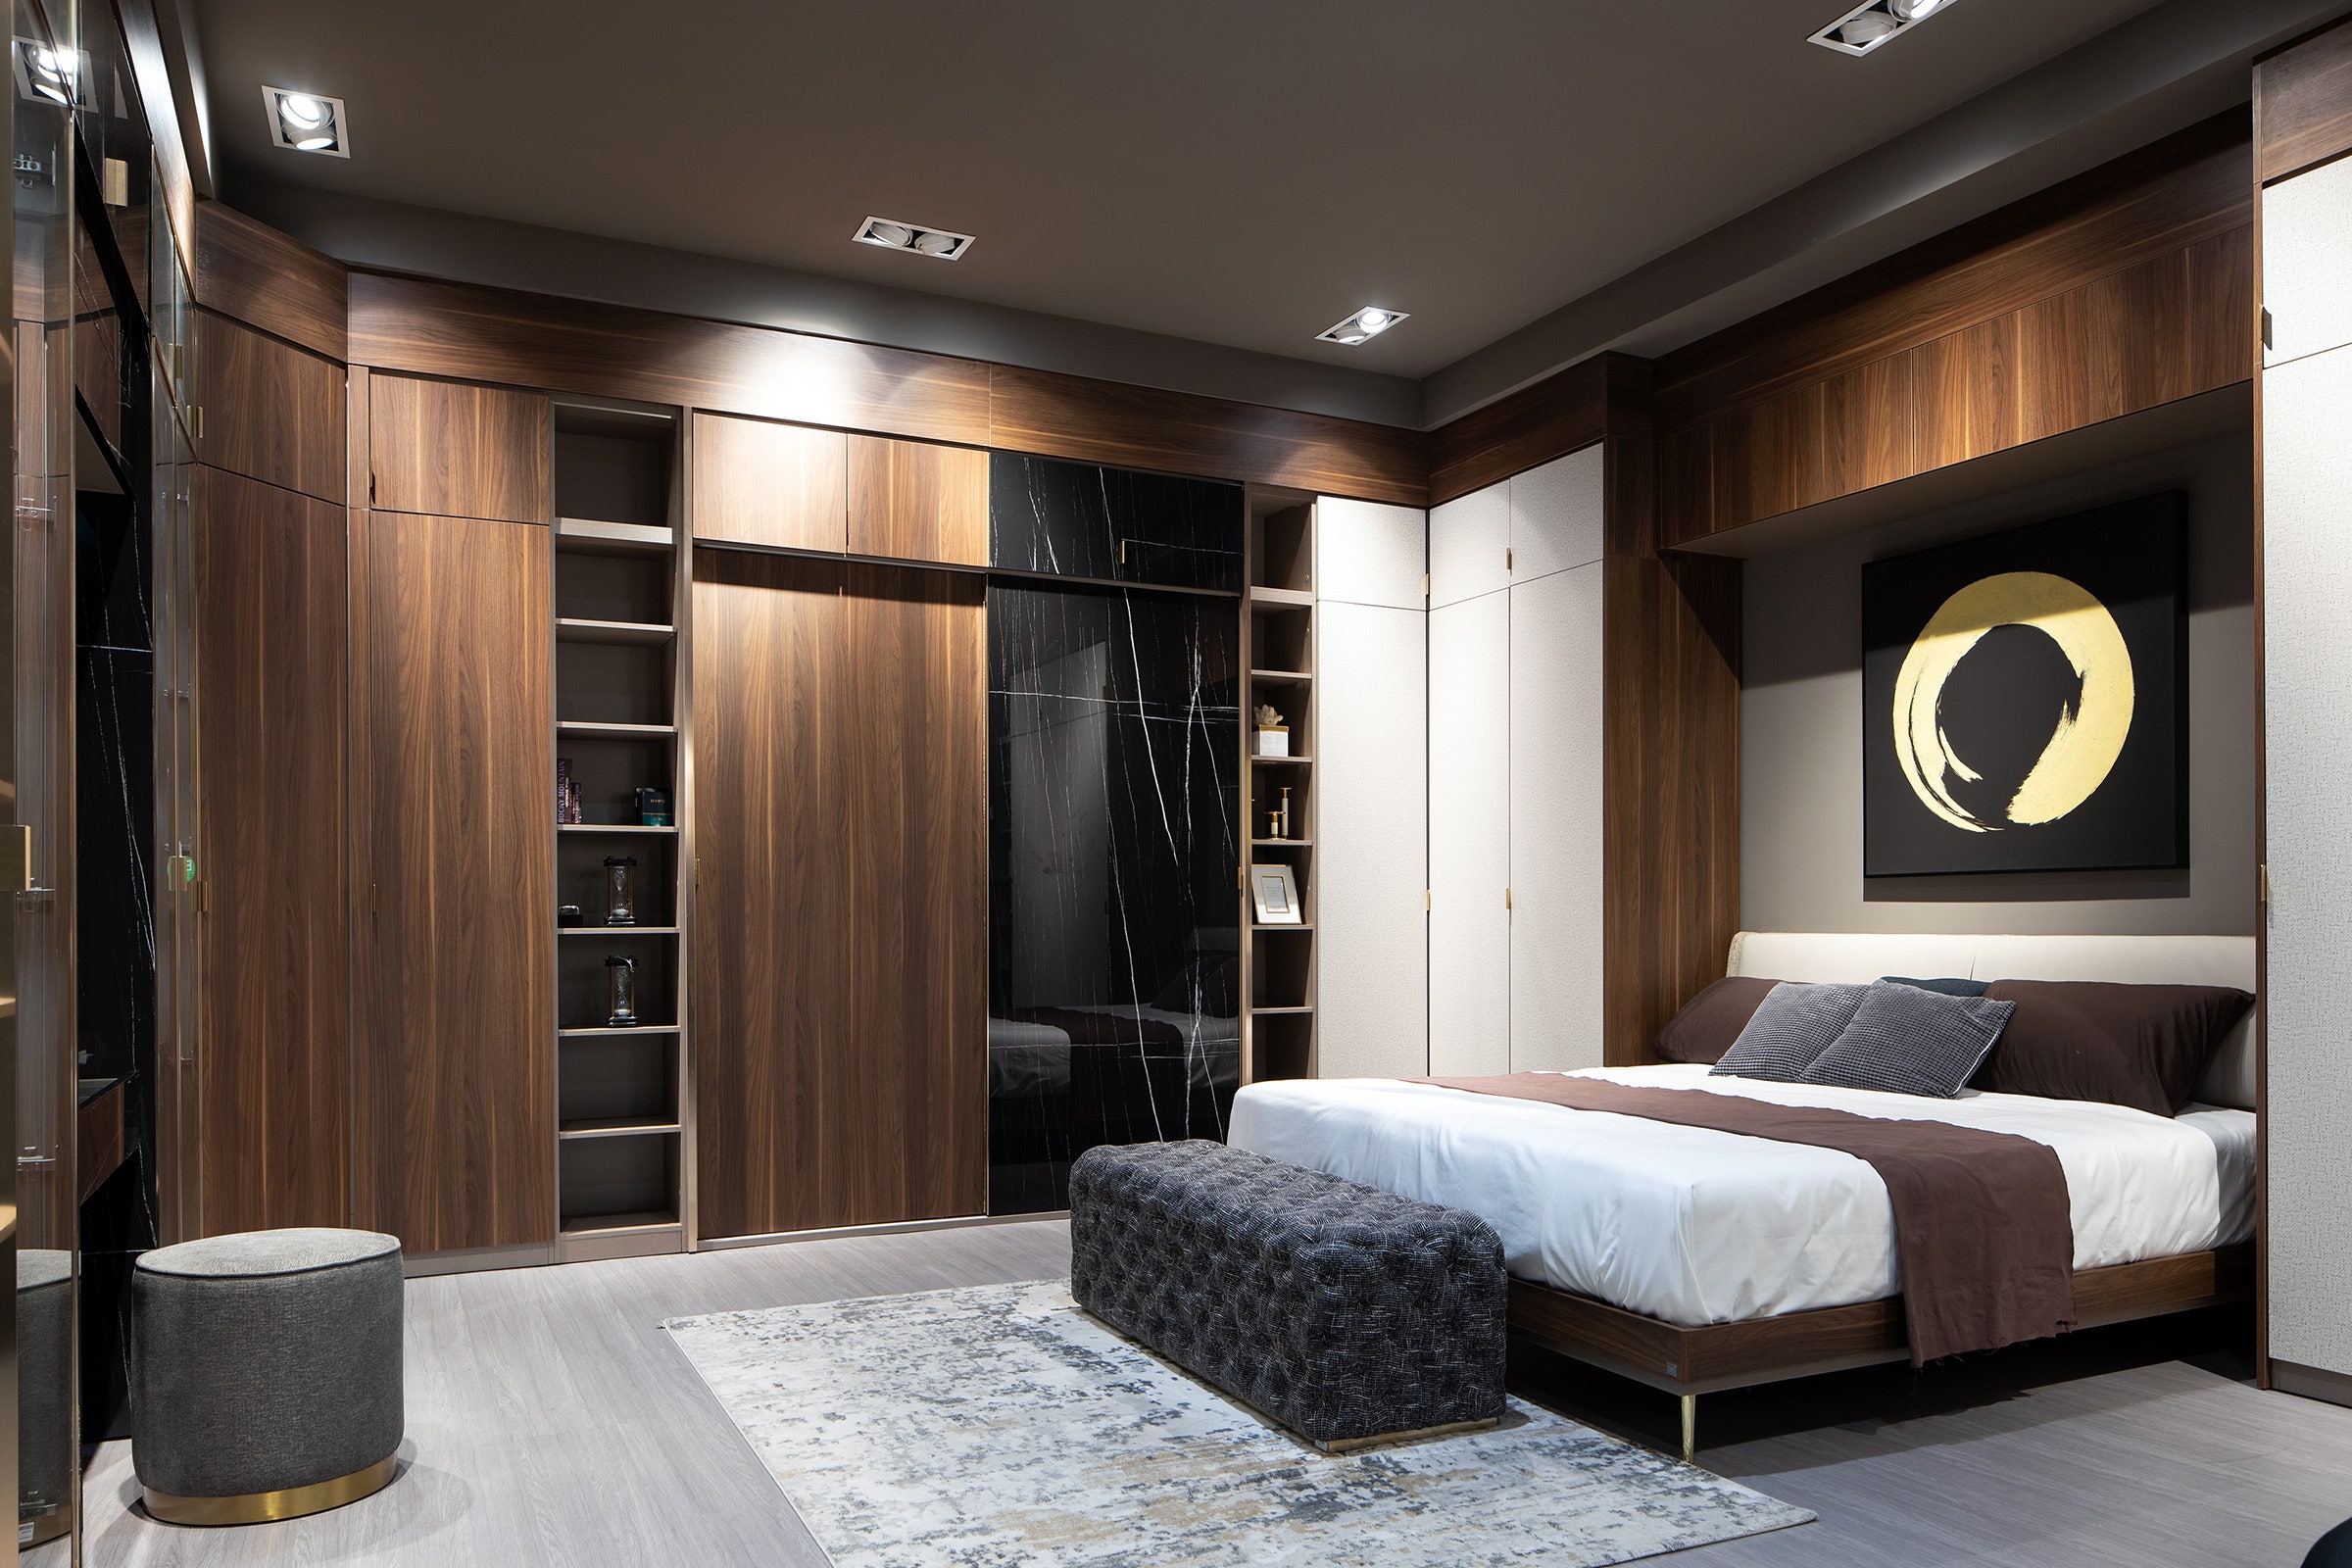 7 ทริคออกแบบตู้เสื้อผ้าในห้องนอนให้ดูกว้าง ดูแลง่าย | Sb Design Square